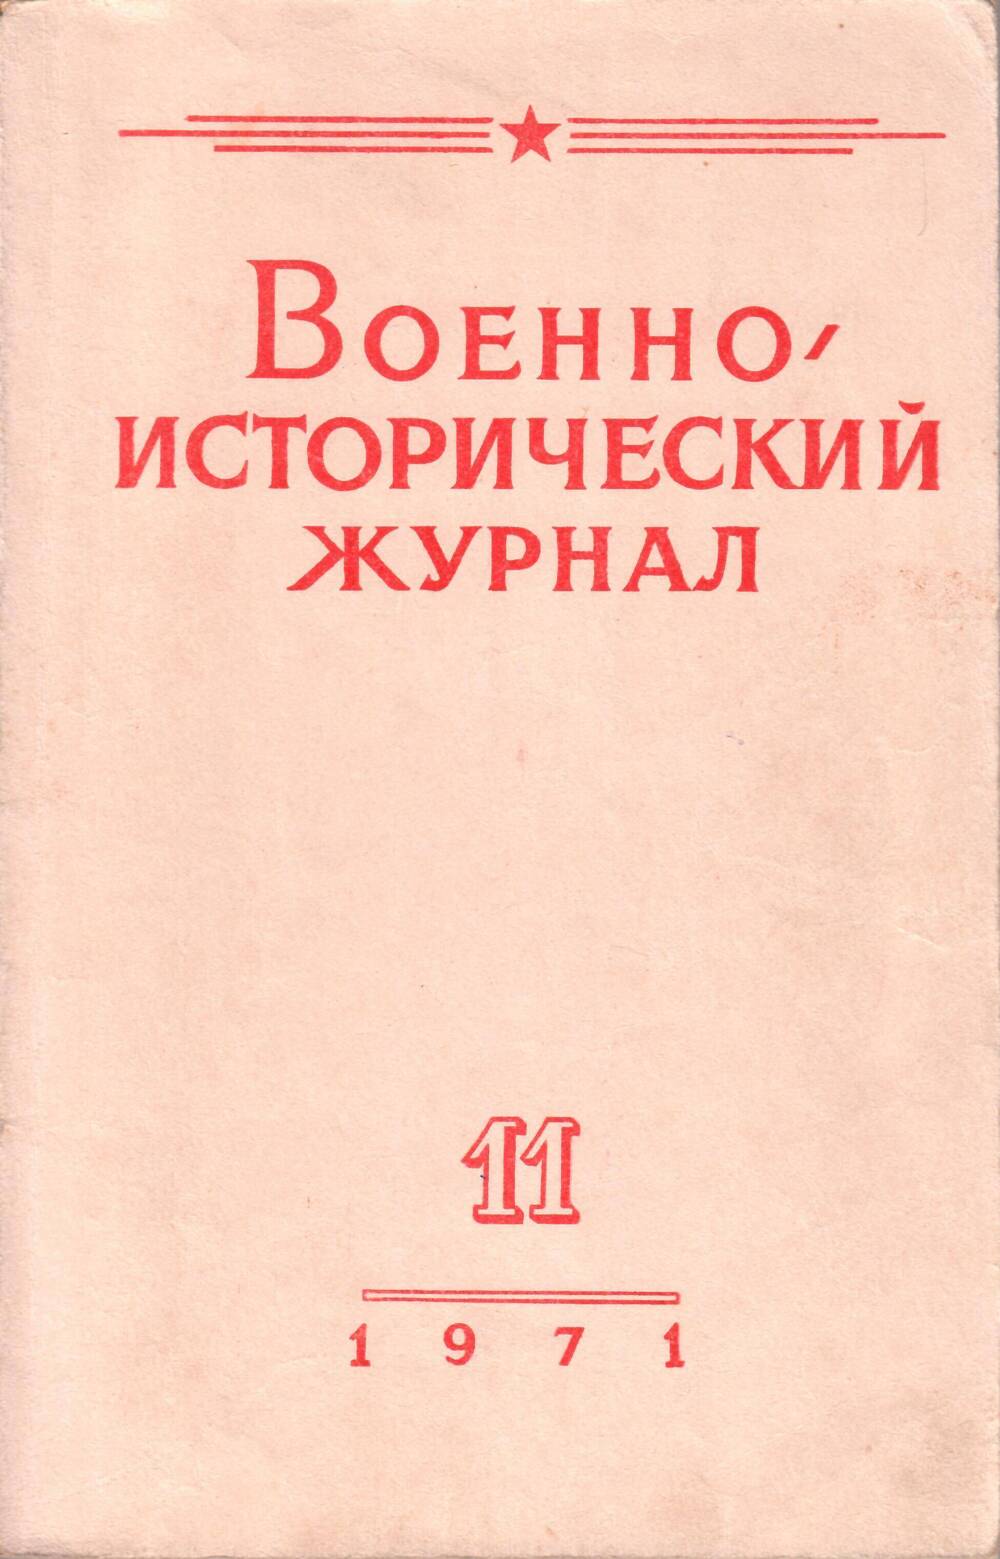 Журнал военно-исторический, № 11, ноябрь, Москва, изд-во Красная звезда, 1971 г.